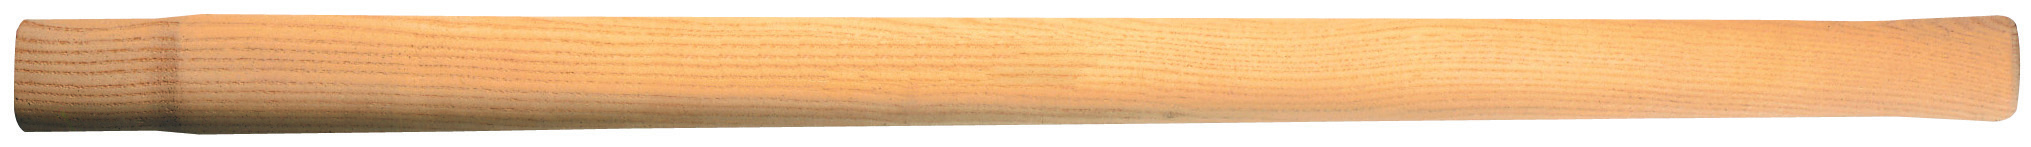 Vorschlaghammer-Stiel Hickory 900mm für 500/600g